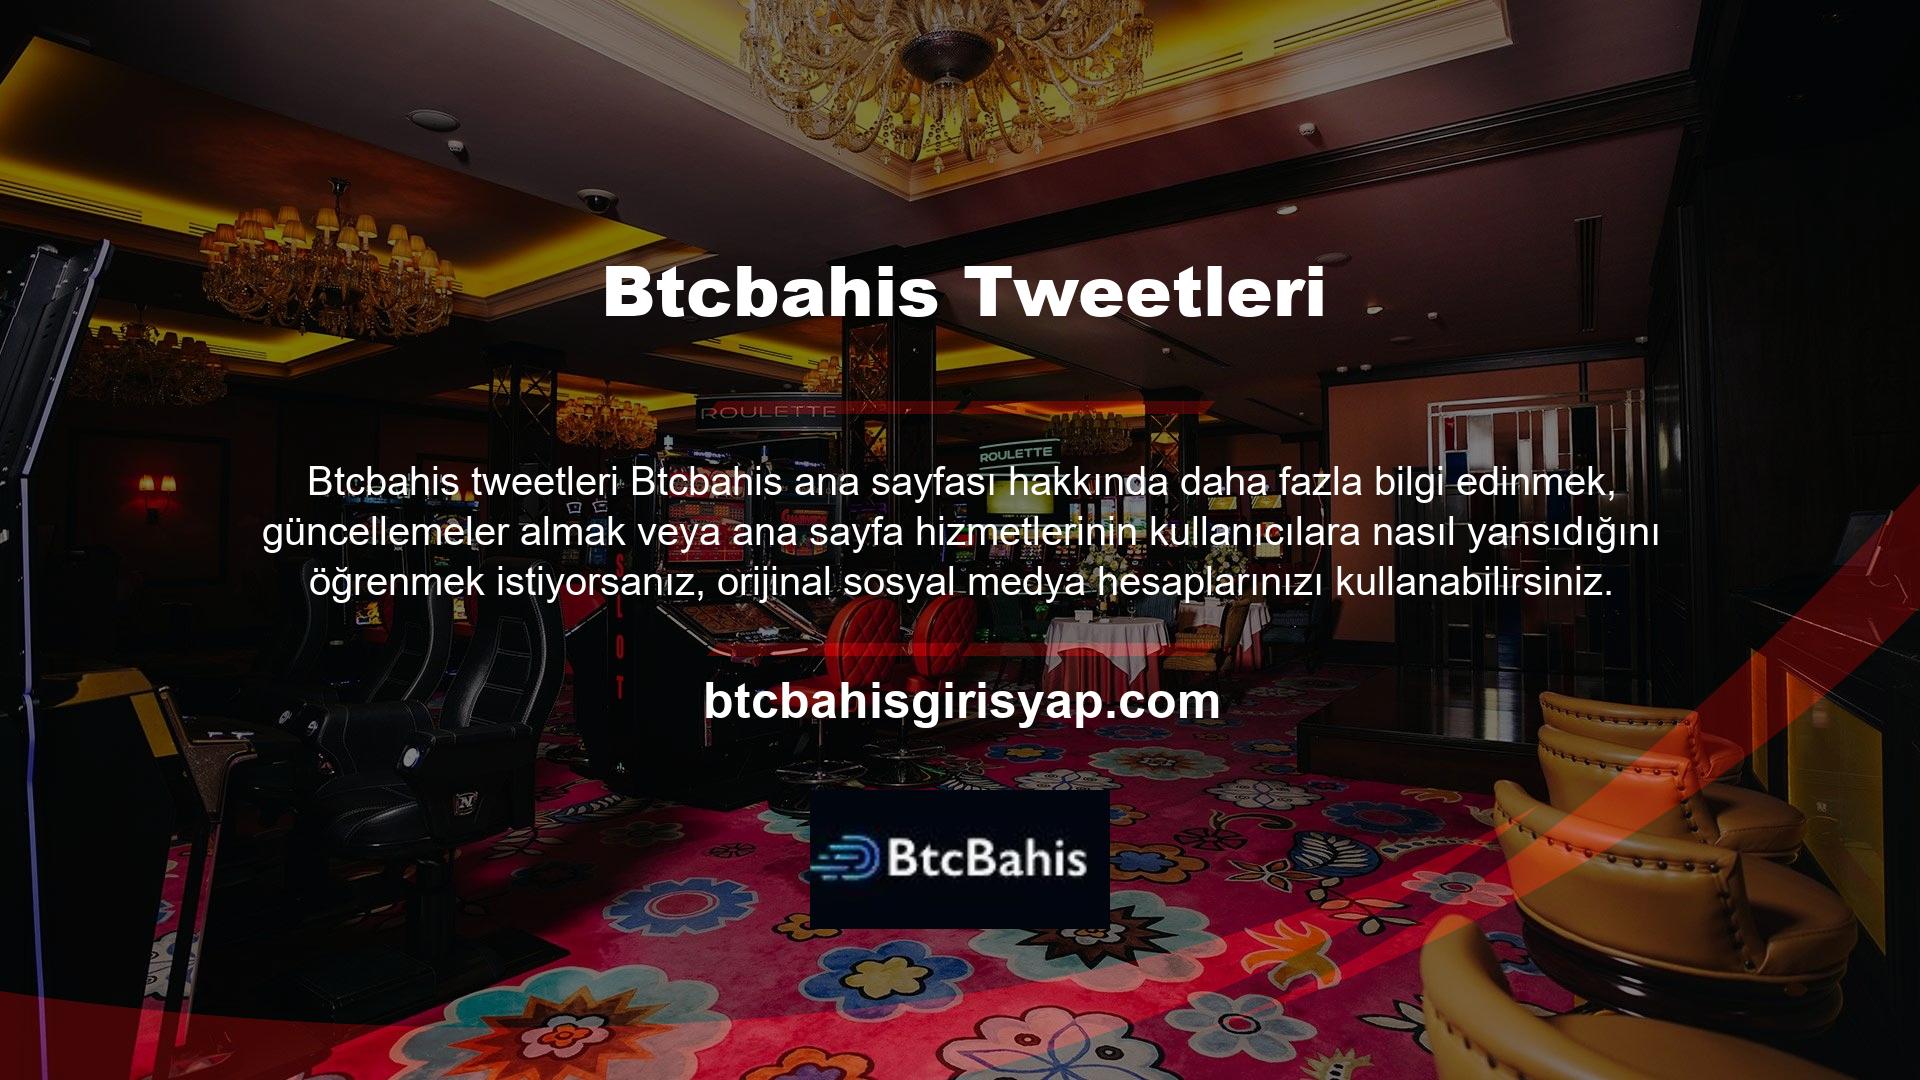 Bu seçeneklerden en ünlüsü ve güvenlisi olan Btcbahis Twitter hesabı, çeşitli sosyal medya hesaplarının kullanılmasıyla birleşir gibi oldu